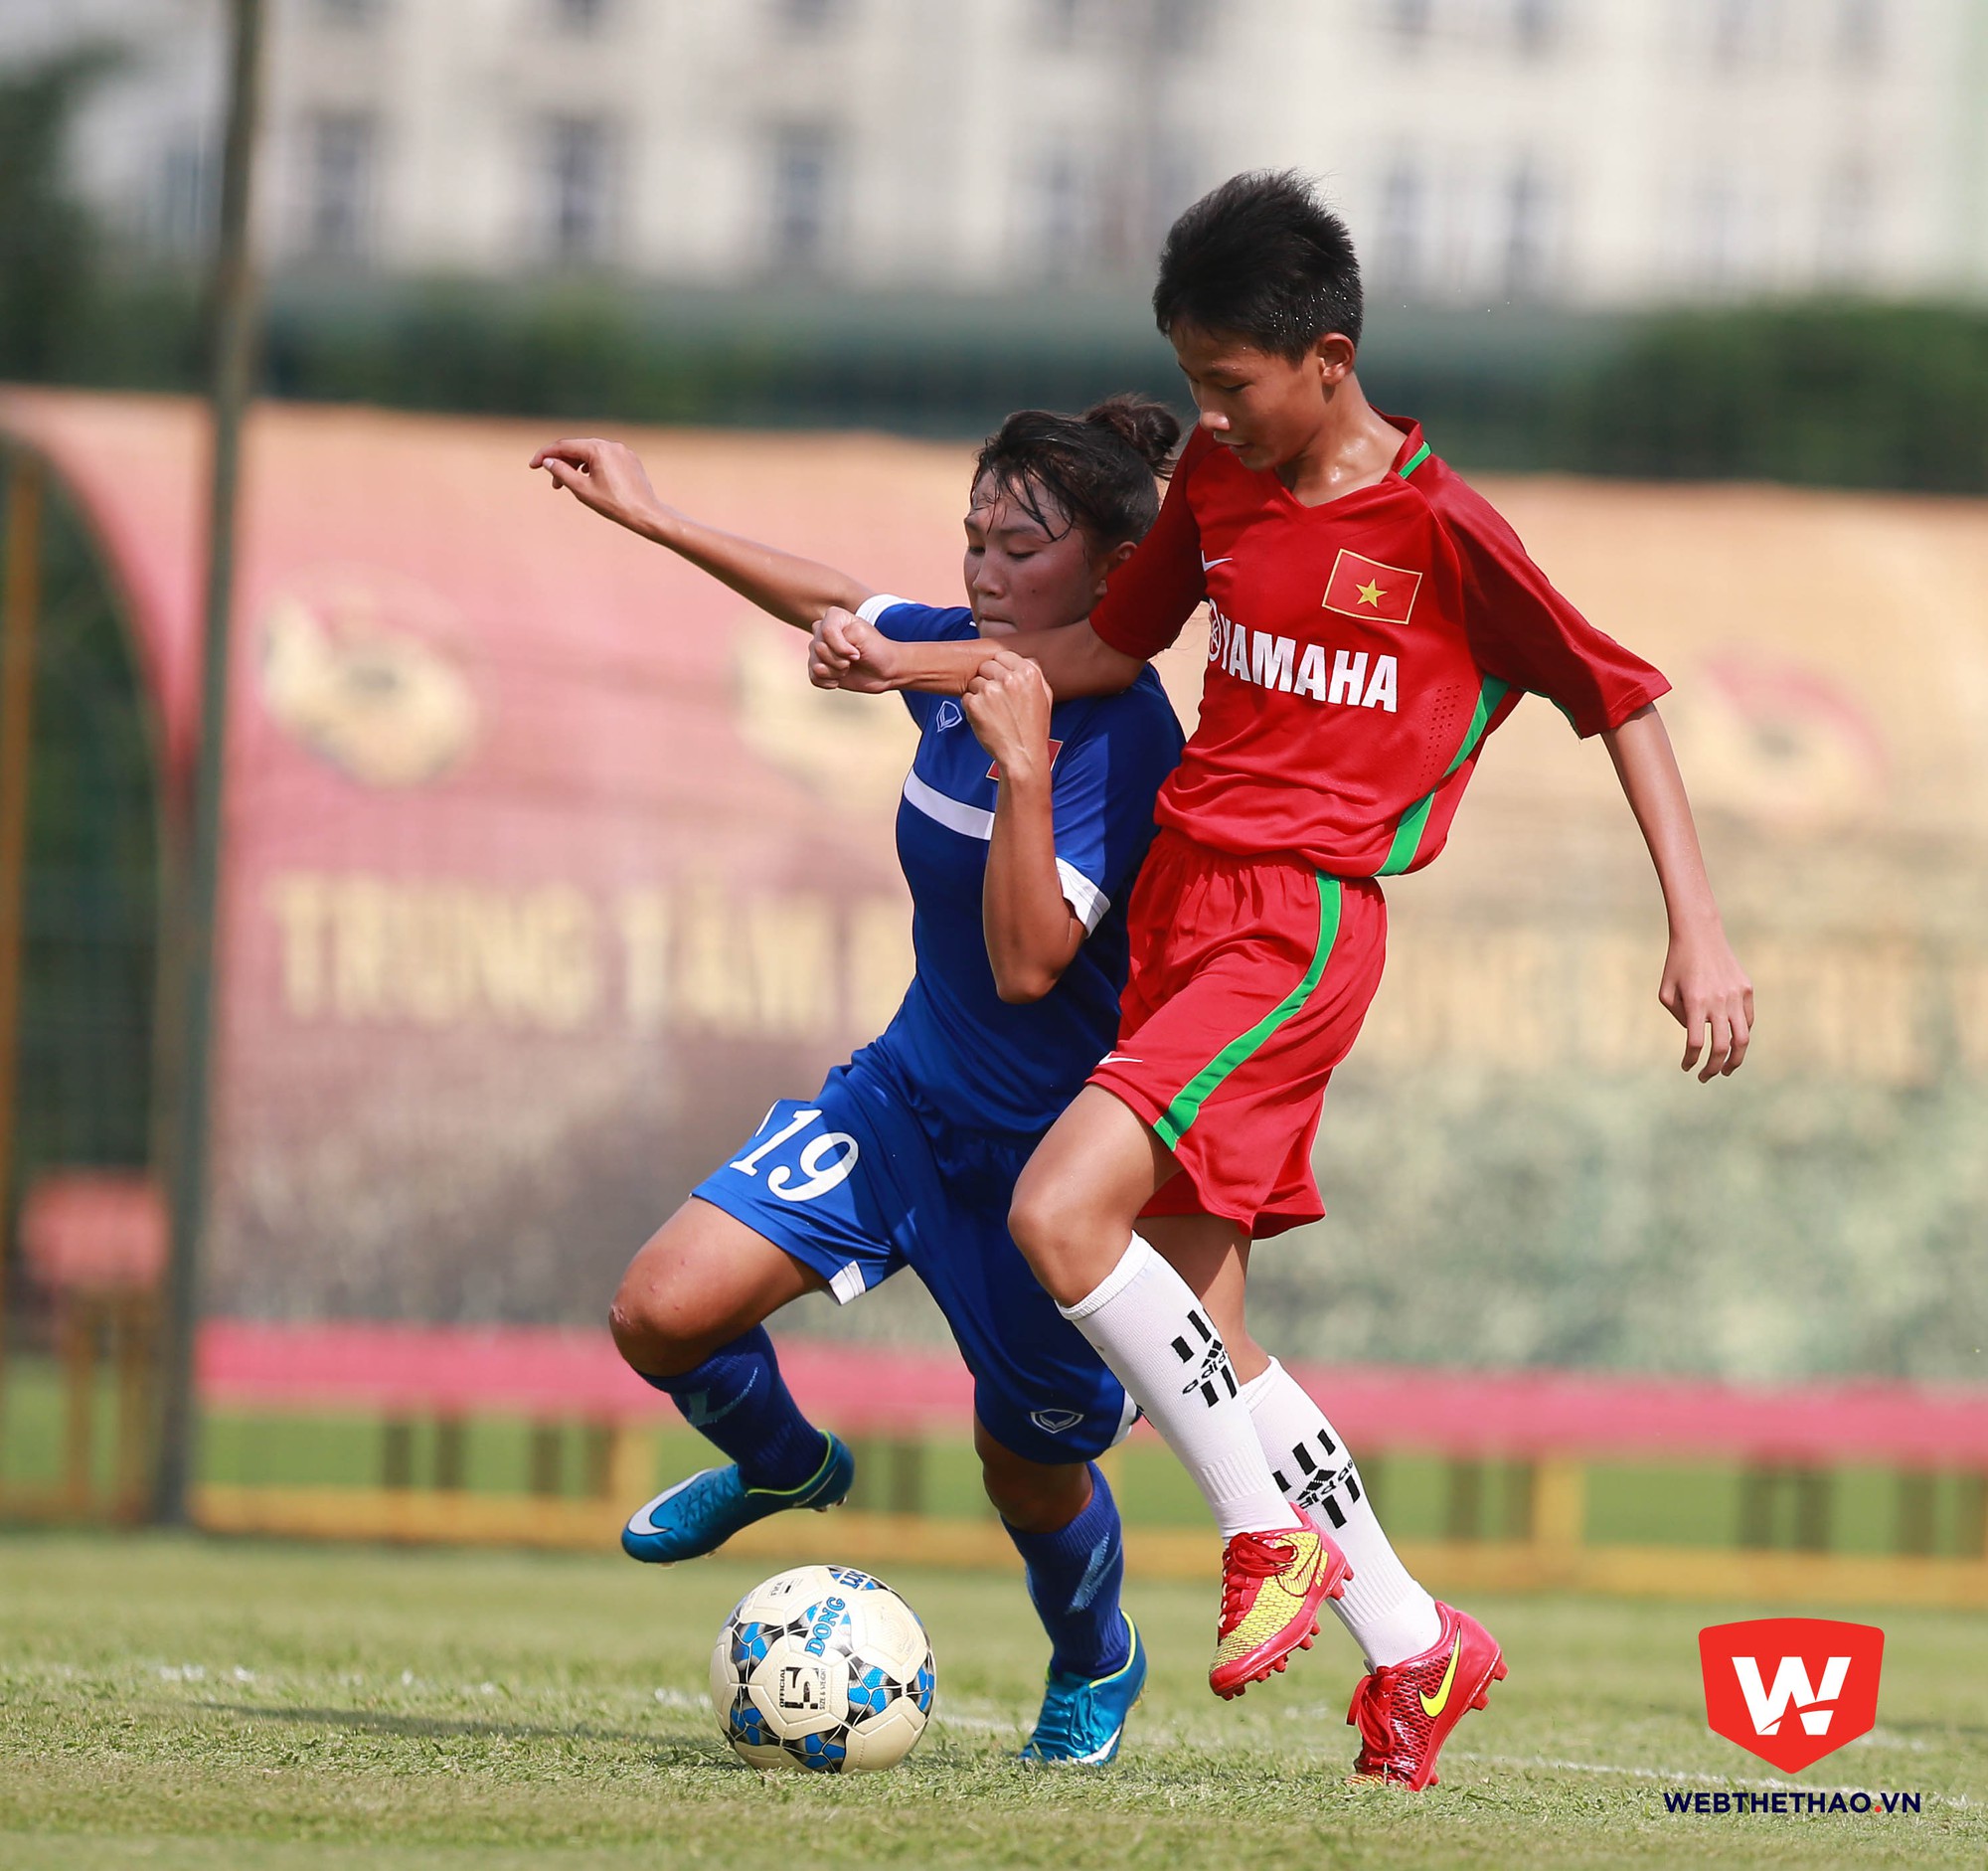 Huỳnh Thịnh nhận nhiều lời khen trong trận đấu này khi hoàn thành xuất sắc nhiệm vụ ở khu vực giữa sân.